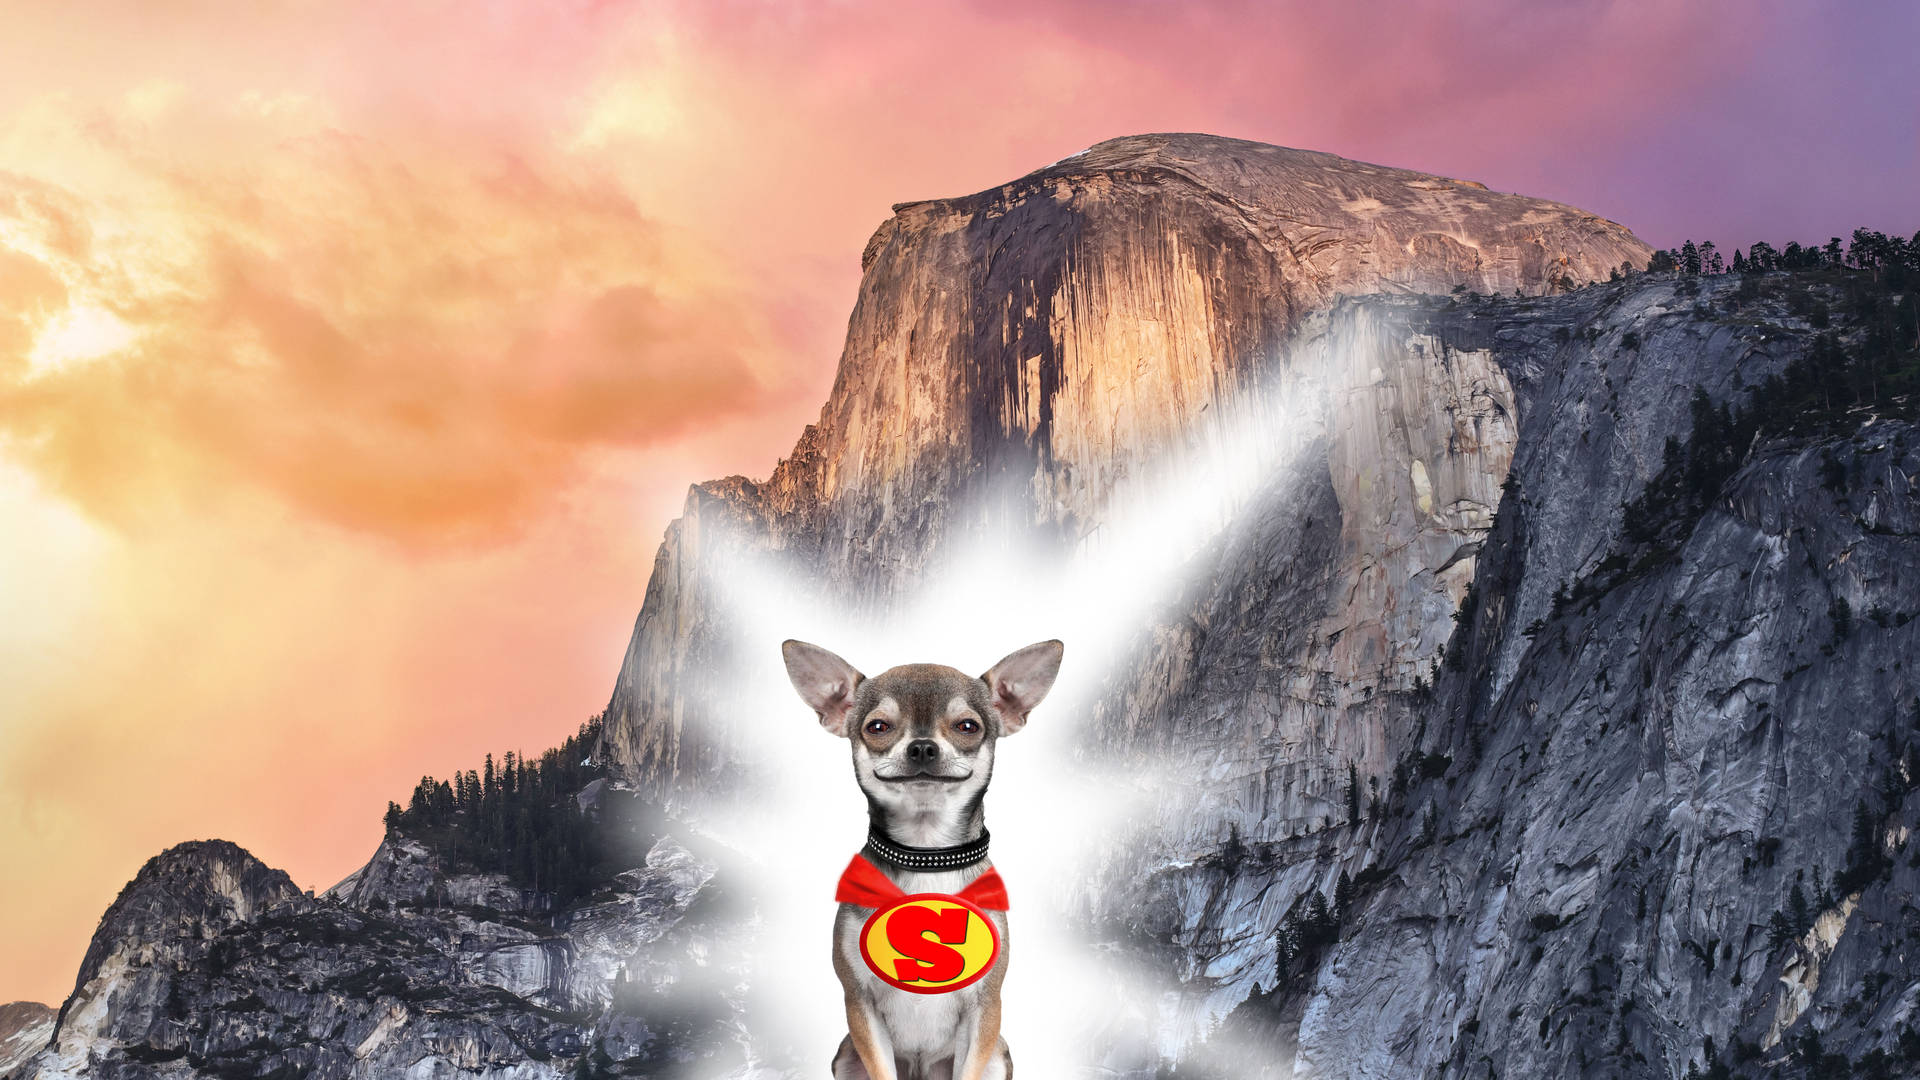 Chihuahua Superhero Poster